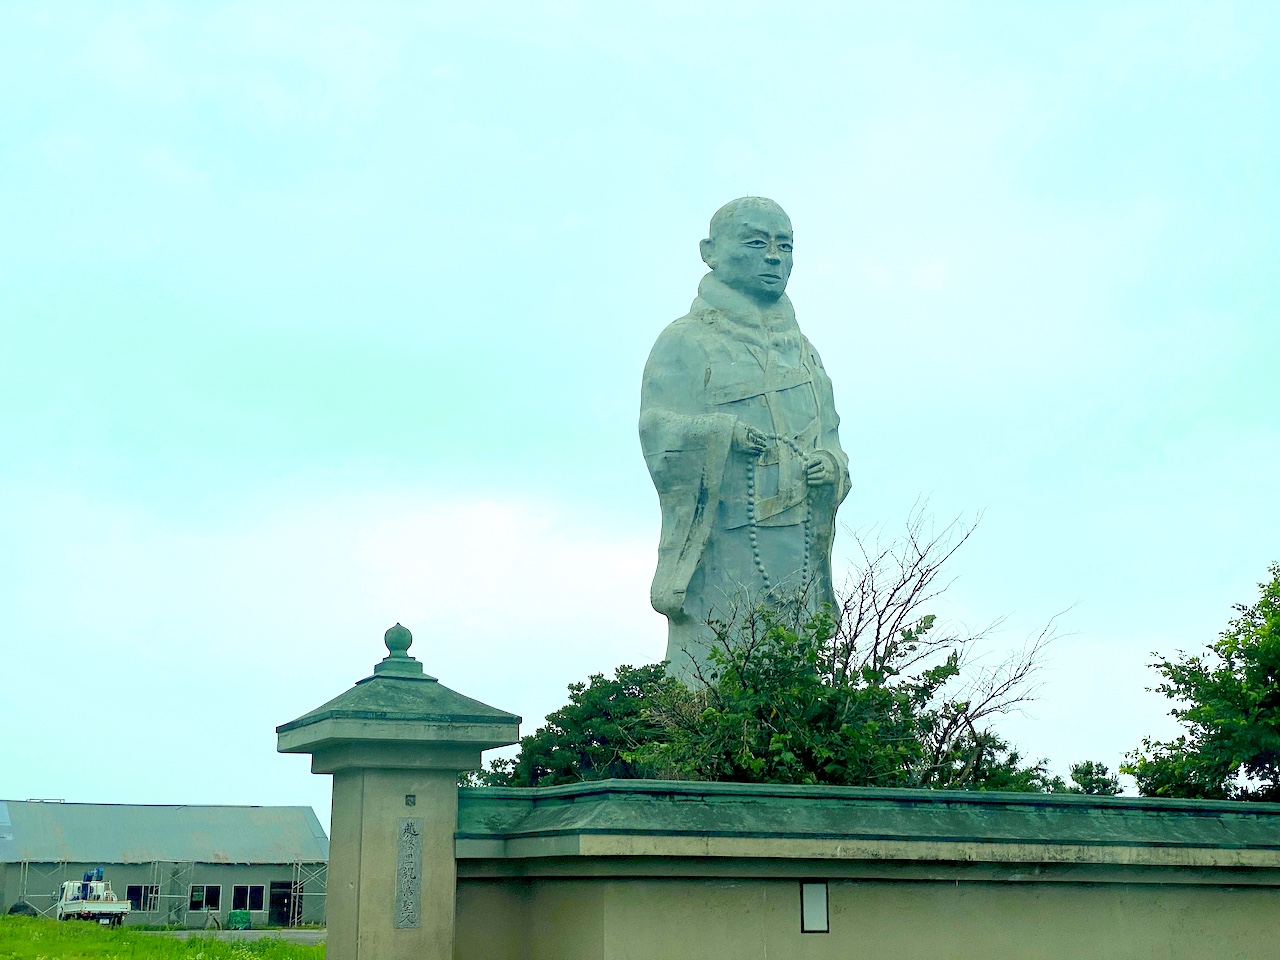 巨大像がインパクトすごすぎる新潟の温泉「西方の湯」【編集部ブログ】